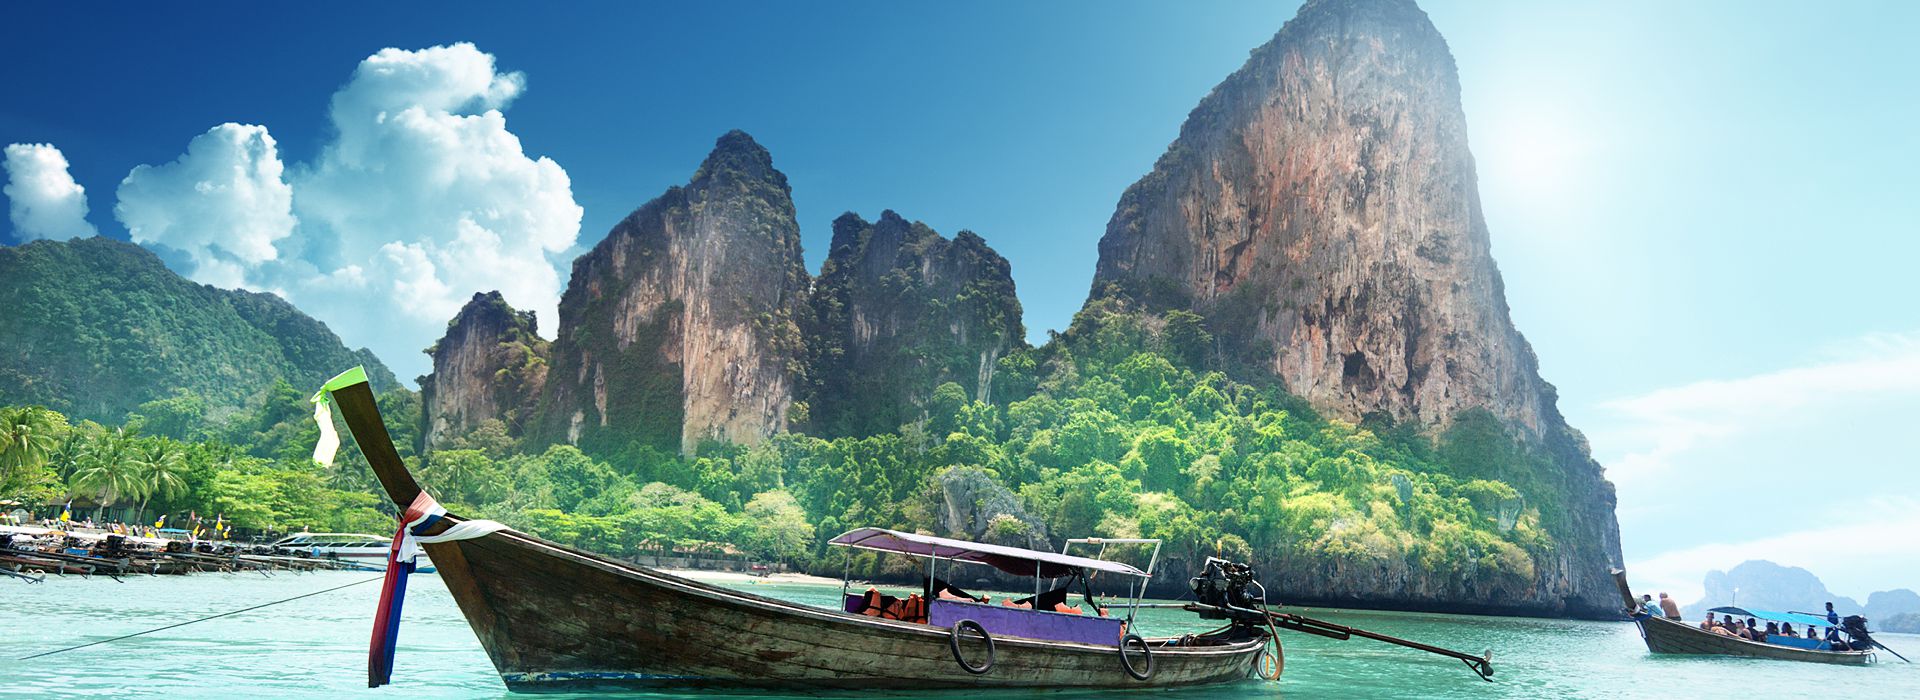 Таиланд продлил режим освобождения от визовых сборов для туристов до 30 апреля